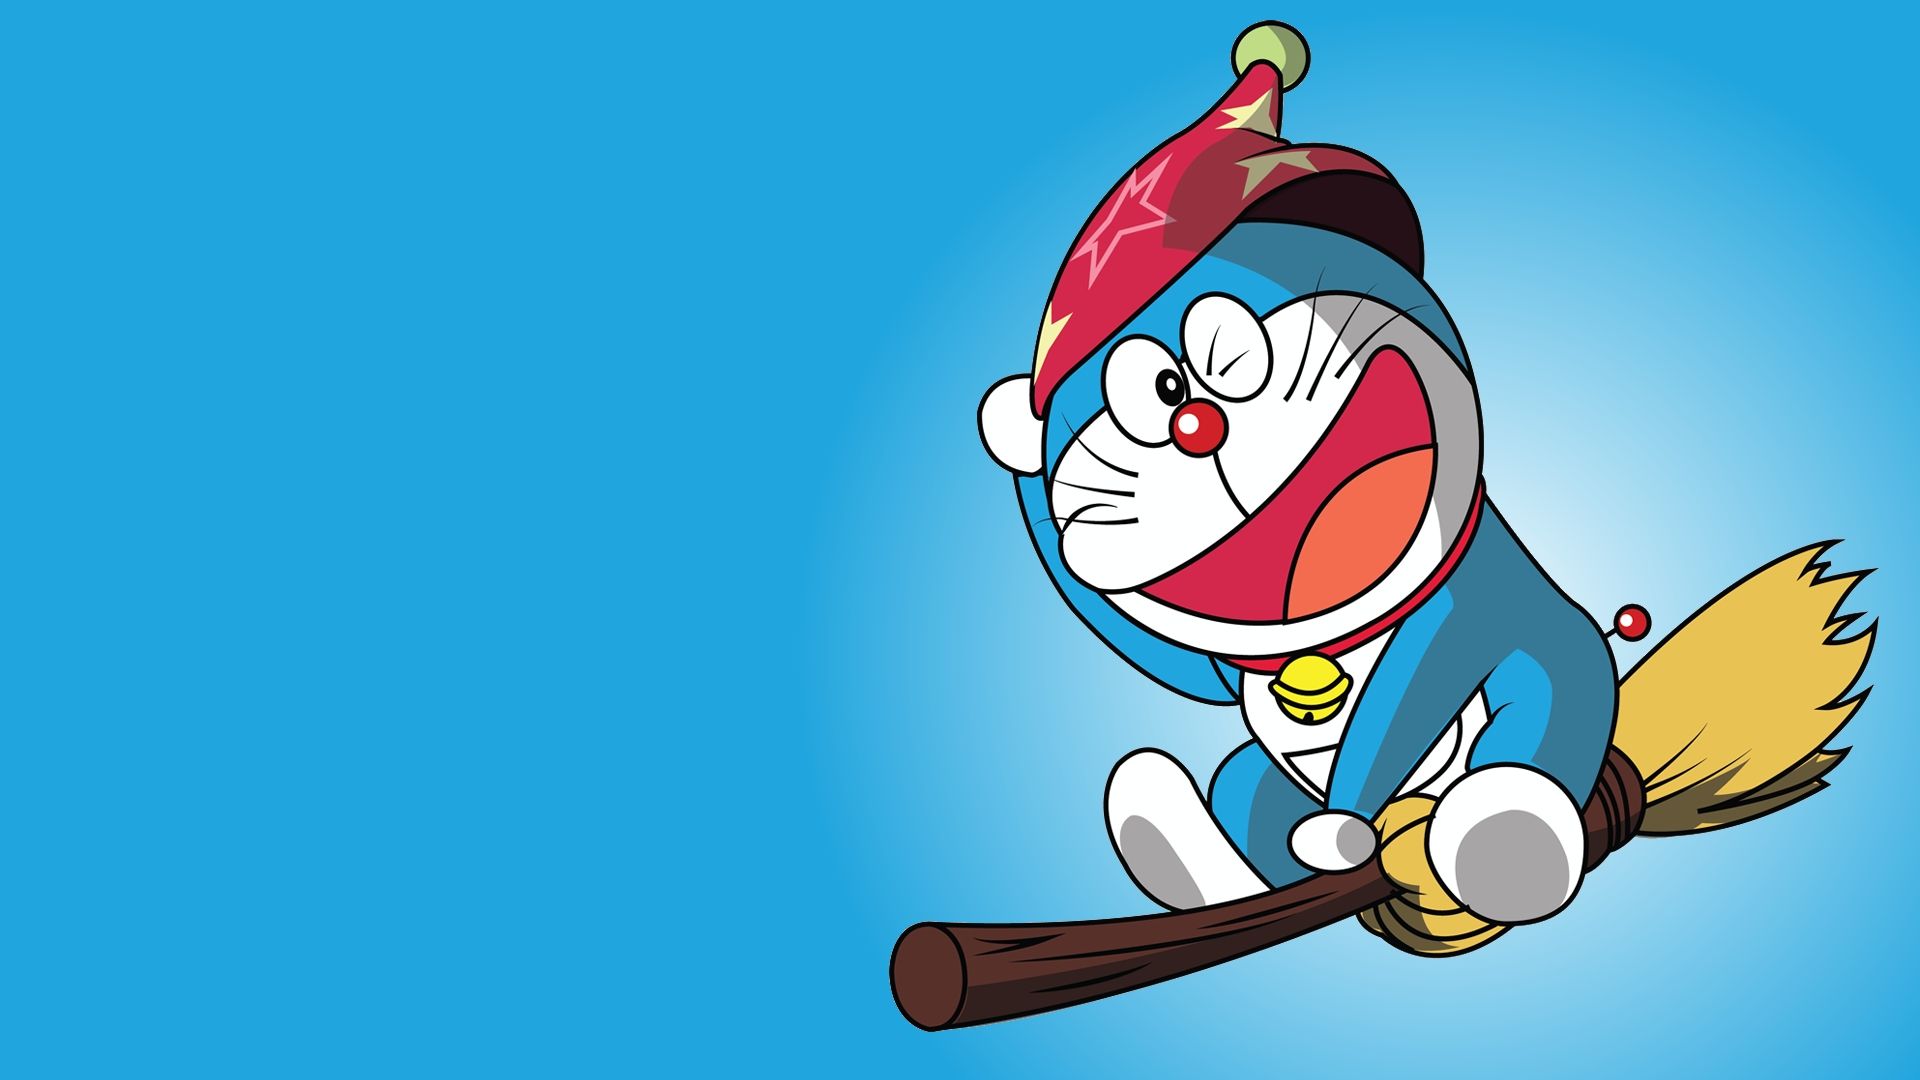 Doraemon - Hình nền PC (Doraemon PC Wallpapers - Wallpaper Cave): Những bức hình nền PC Doraemon diện mạo mới nhất đã sẵn sàng đón chào bạn! Với kích thước phù hợp cho màn hình máy tính, các hình ảnh được thiết kế đẹp mắt và rõ nét. Hãy cập nhật nhanh để có thể ngắm nhìn chú mèo máy Doraemon xinh đẹp mỗi ngày!